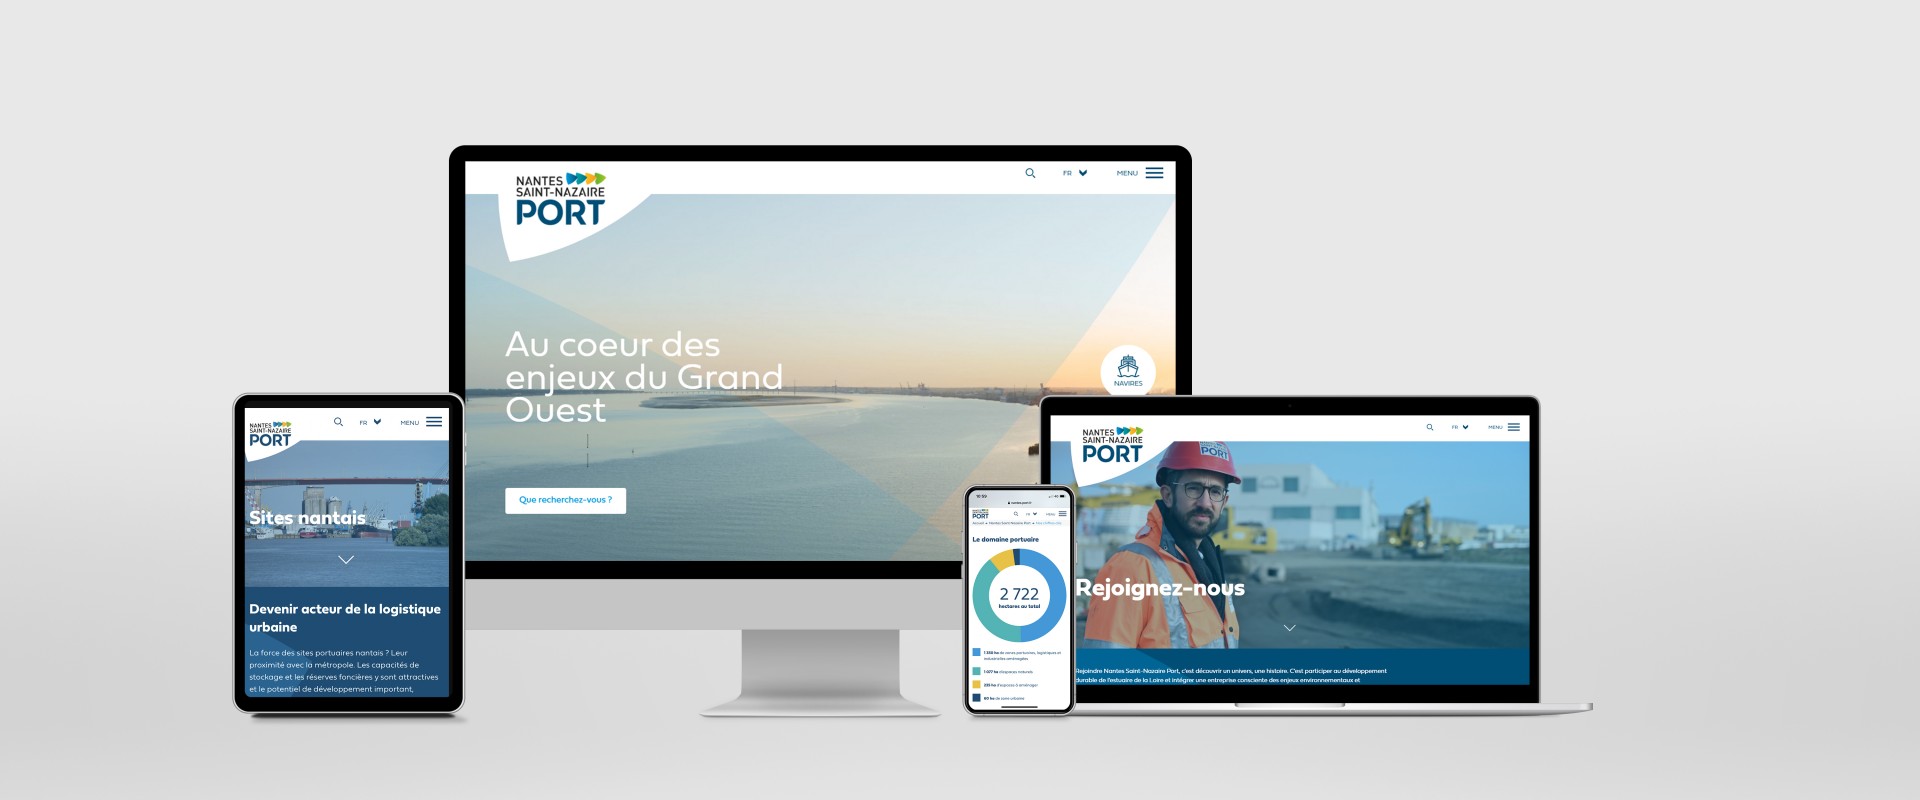 A New Design For Nantes ‒ Saint Nazaire Port’s Website